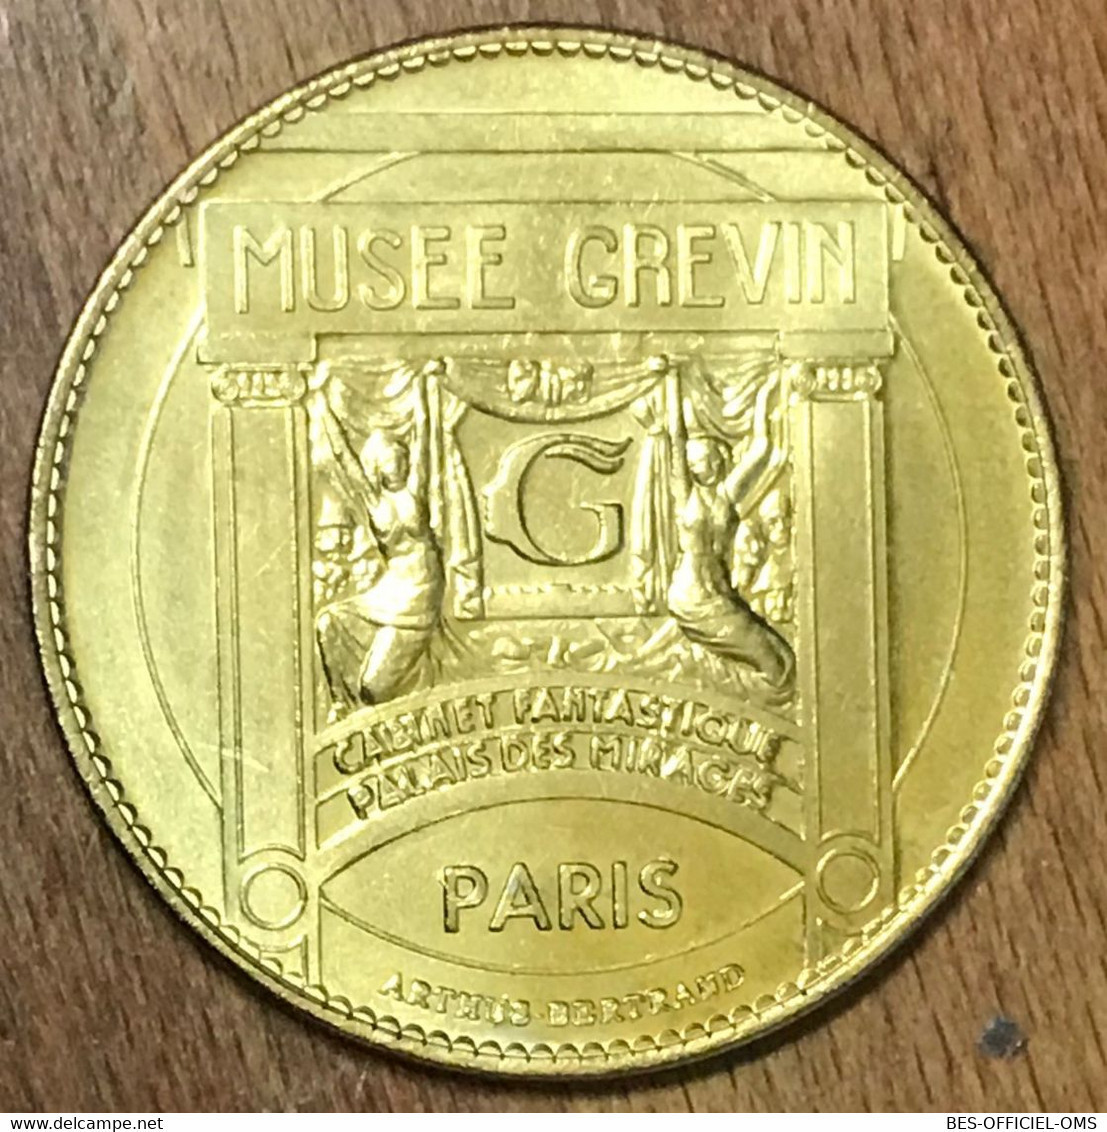 75009 MICHAEL JACKSON PARIS MUSÉE GRÉVIN AB MEDAILLE ARTHUS-BERTRAND JETON TOURISTIQUE MEDALS COINS TOKENS - Non-datés